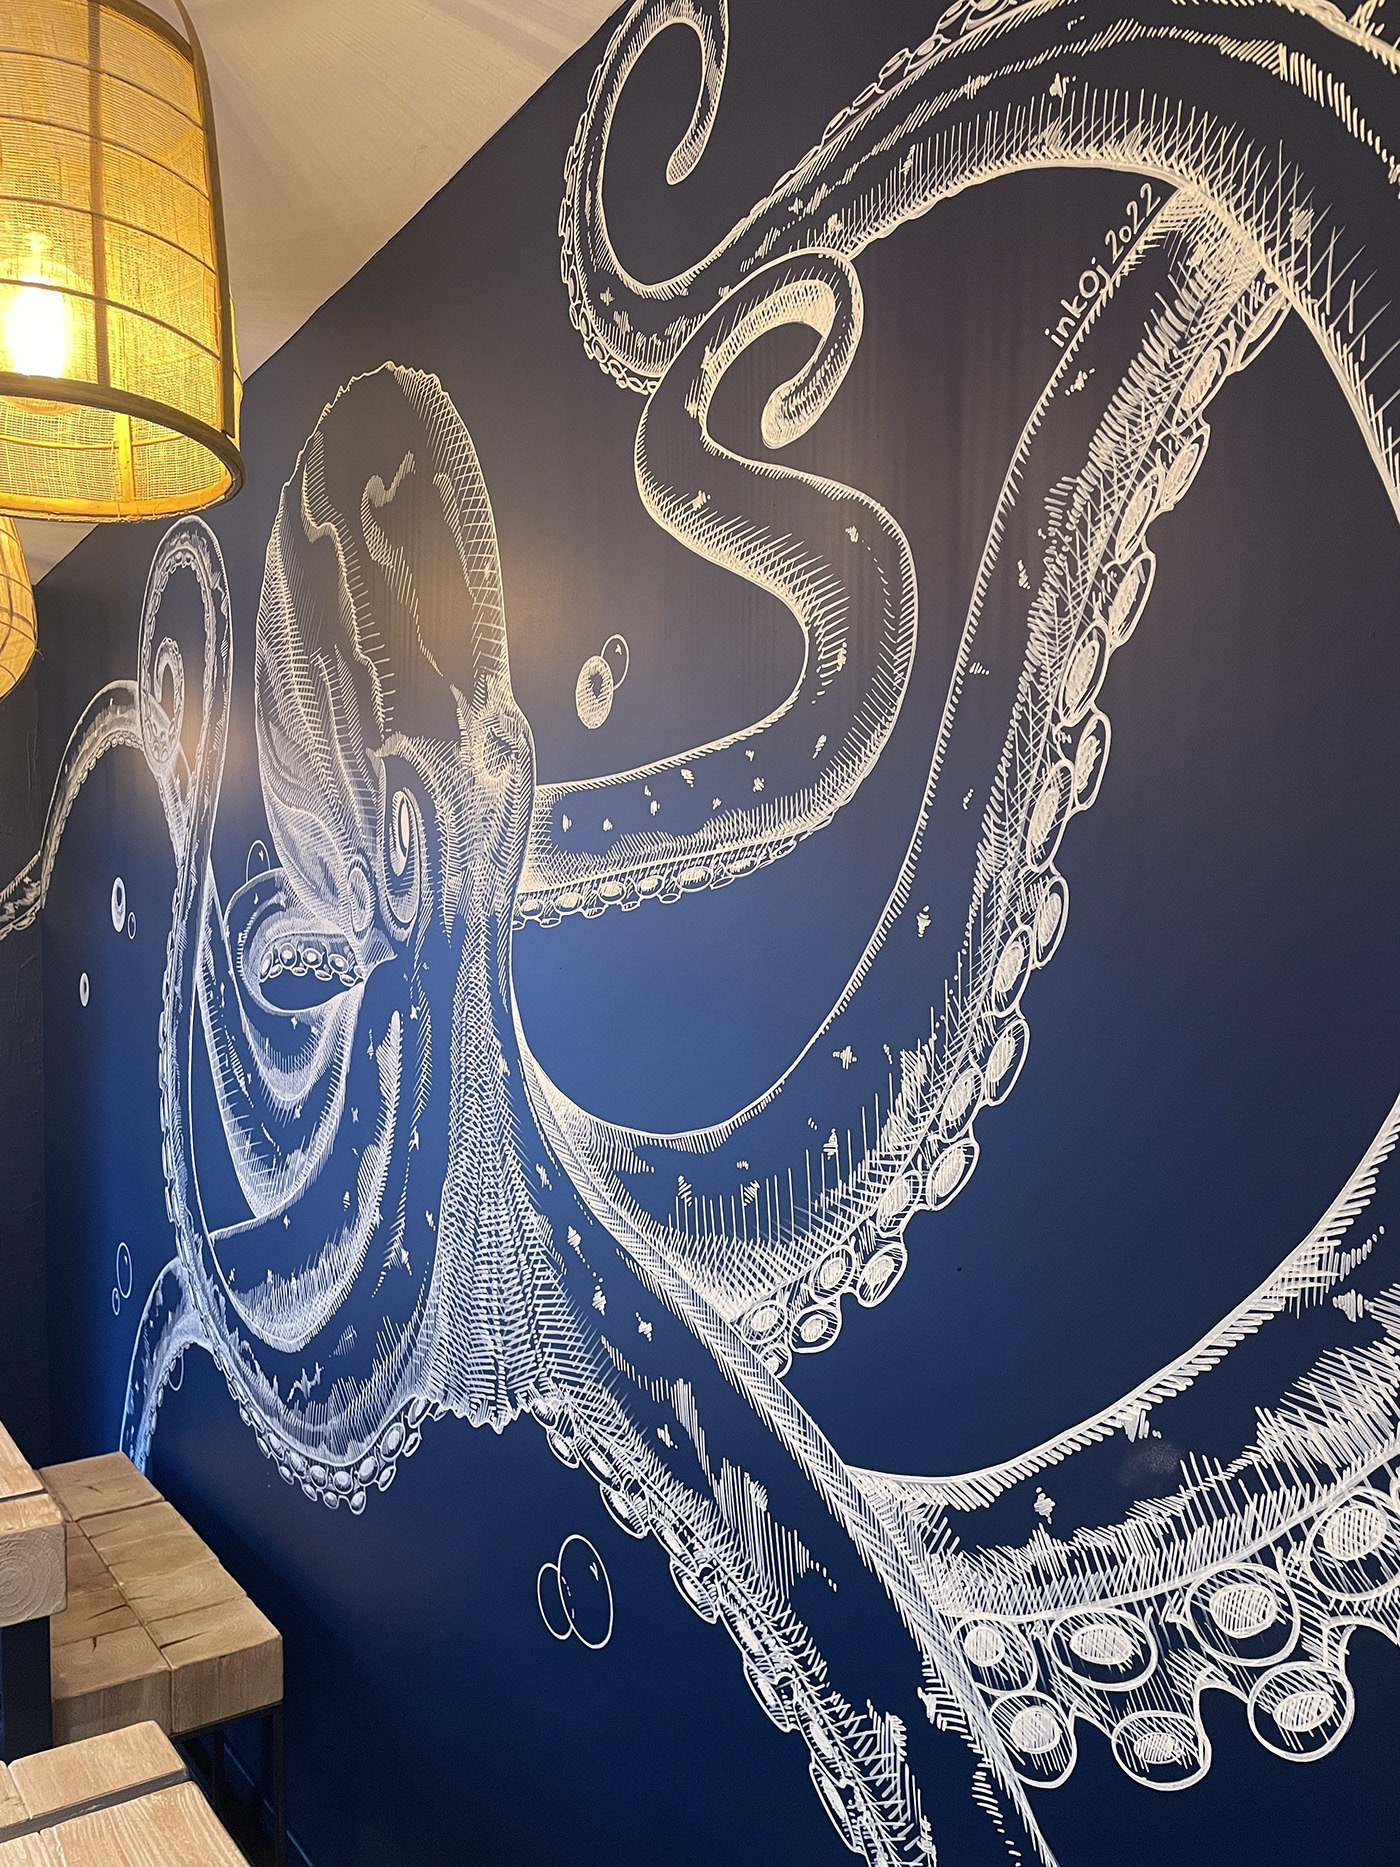 Drawing  fresco kraken octopus wall